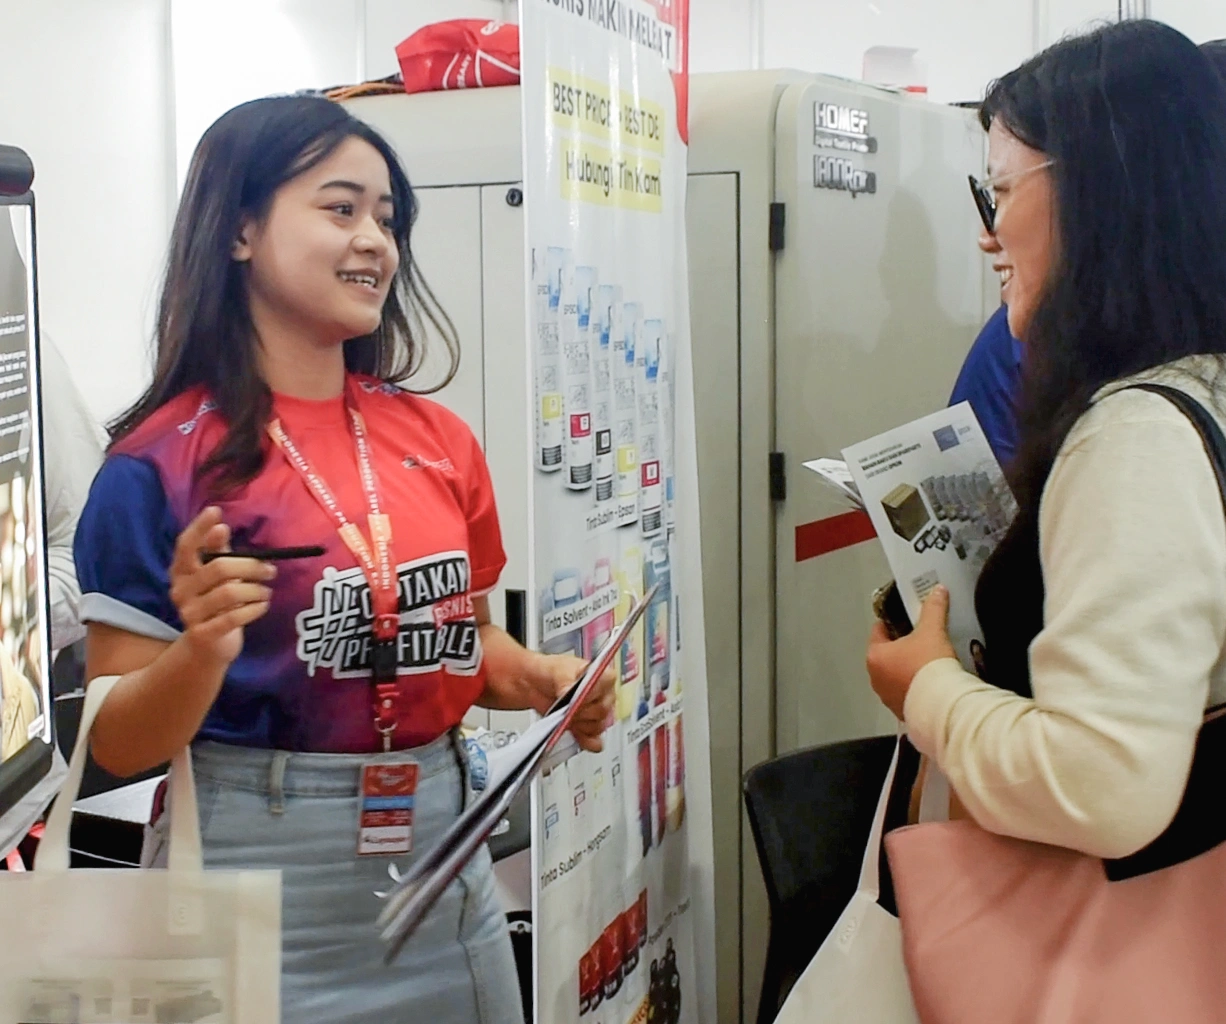 Interaksi Positif Antara Staff Digital Printing Dan Pelanggan Di Pameran.